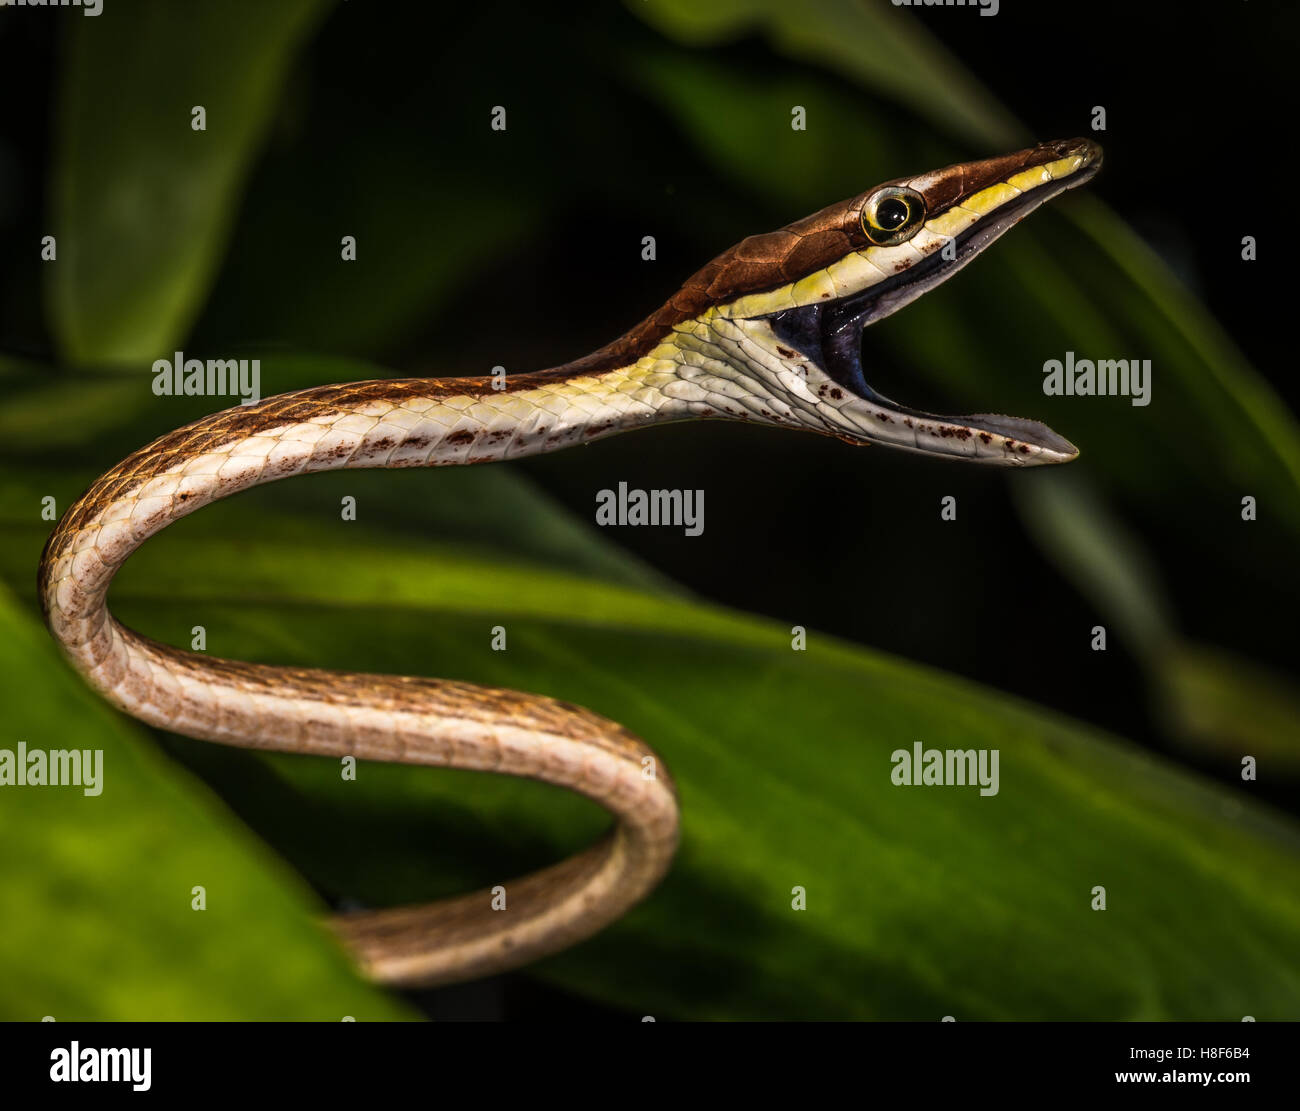 Oxybelis aeneus, comúnmente conocida como la mexicana vid vid marrón o SERPIENTE SERPIENTE, es una especie de serpiente colubrid Foto de stock